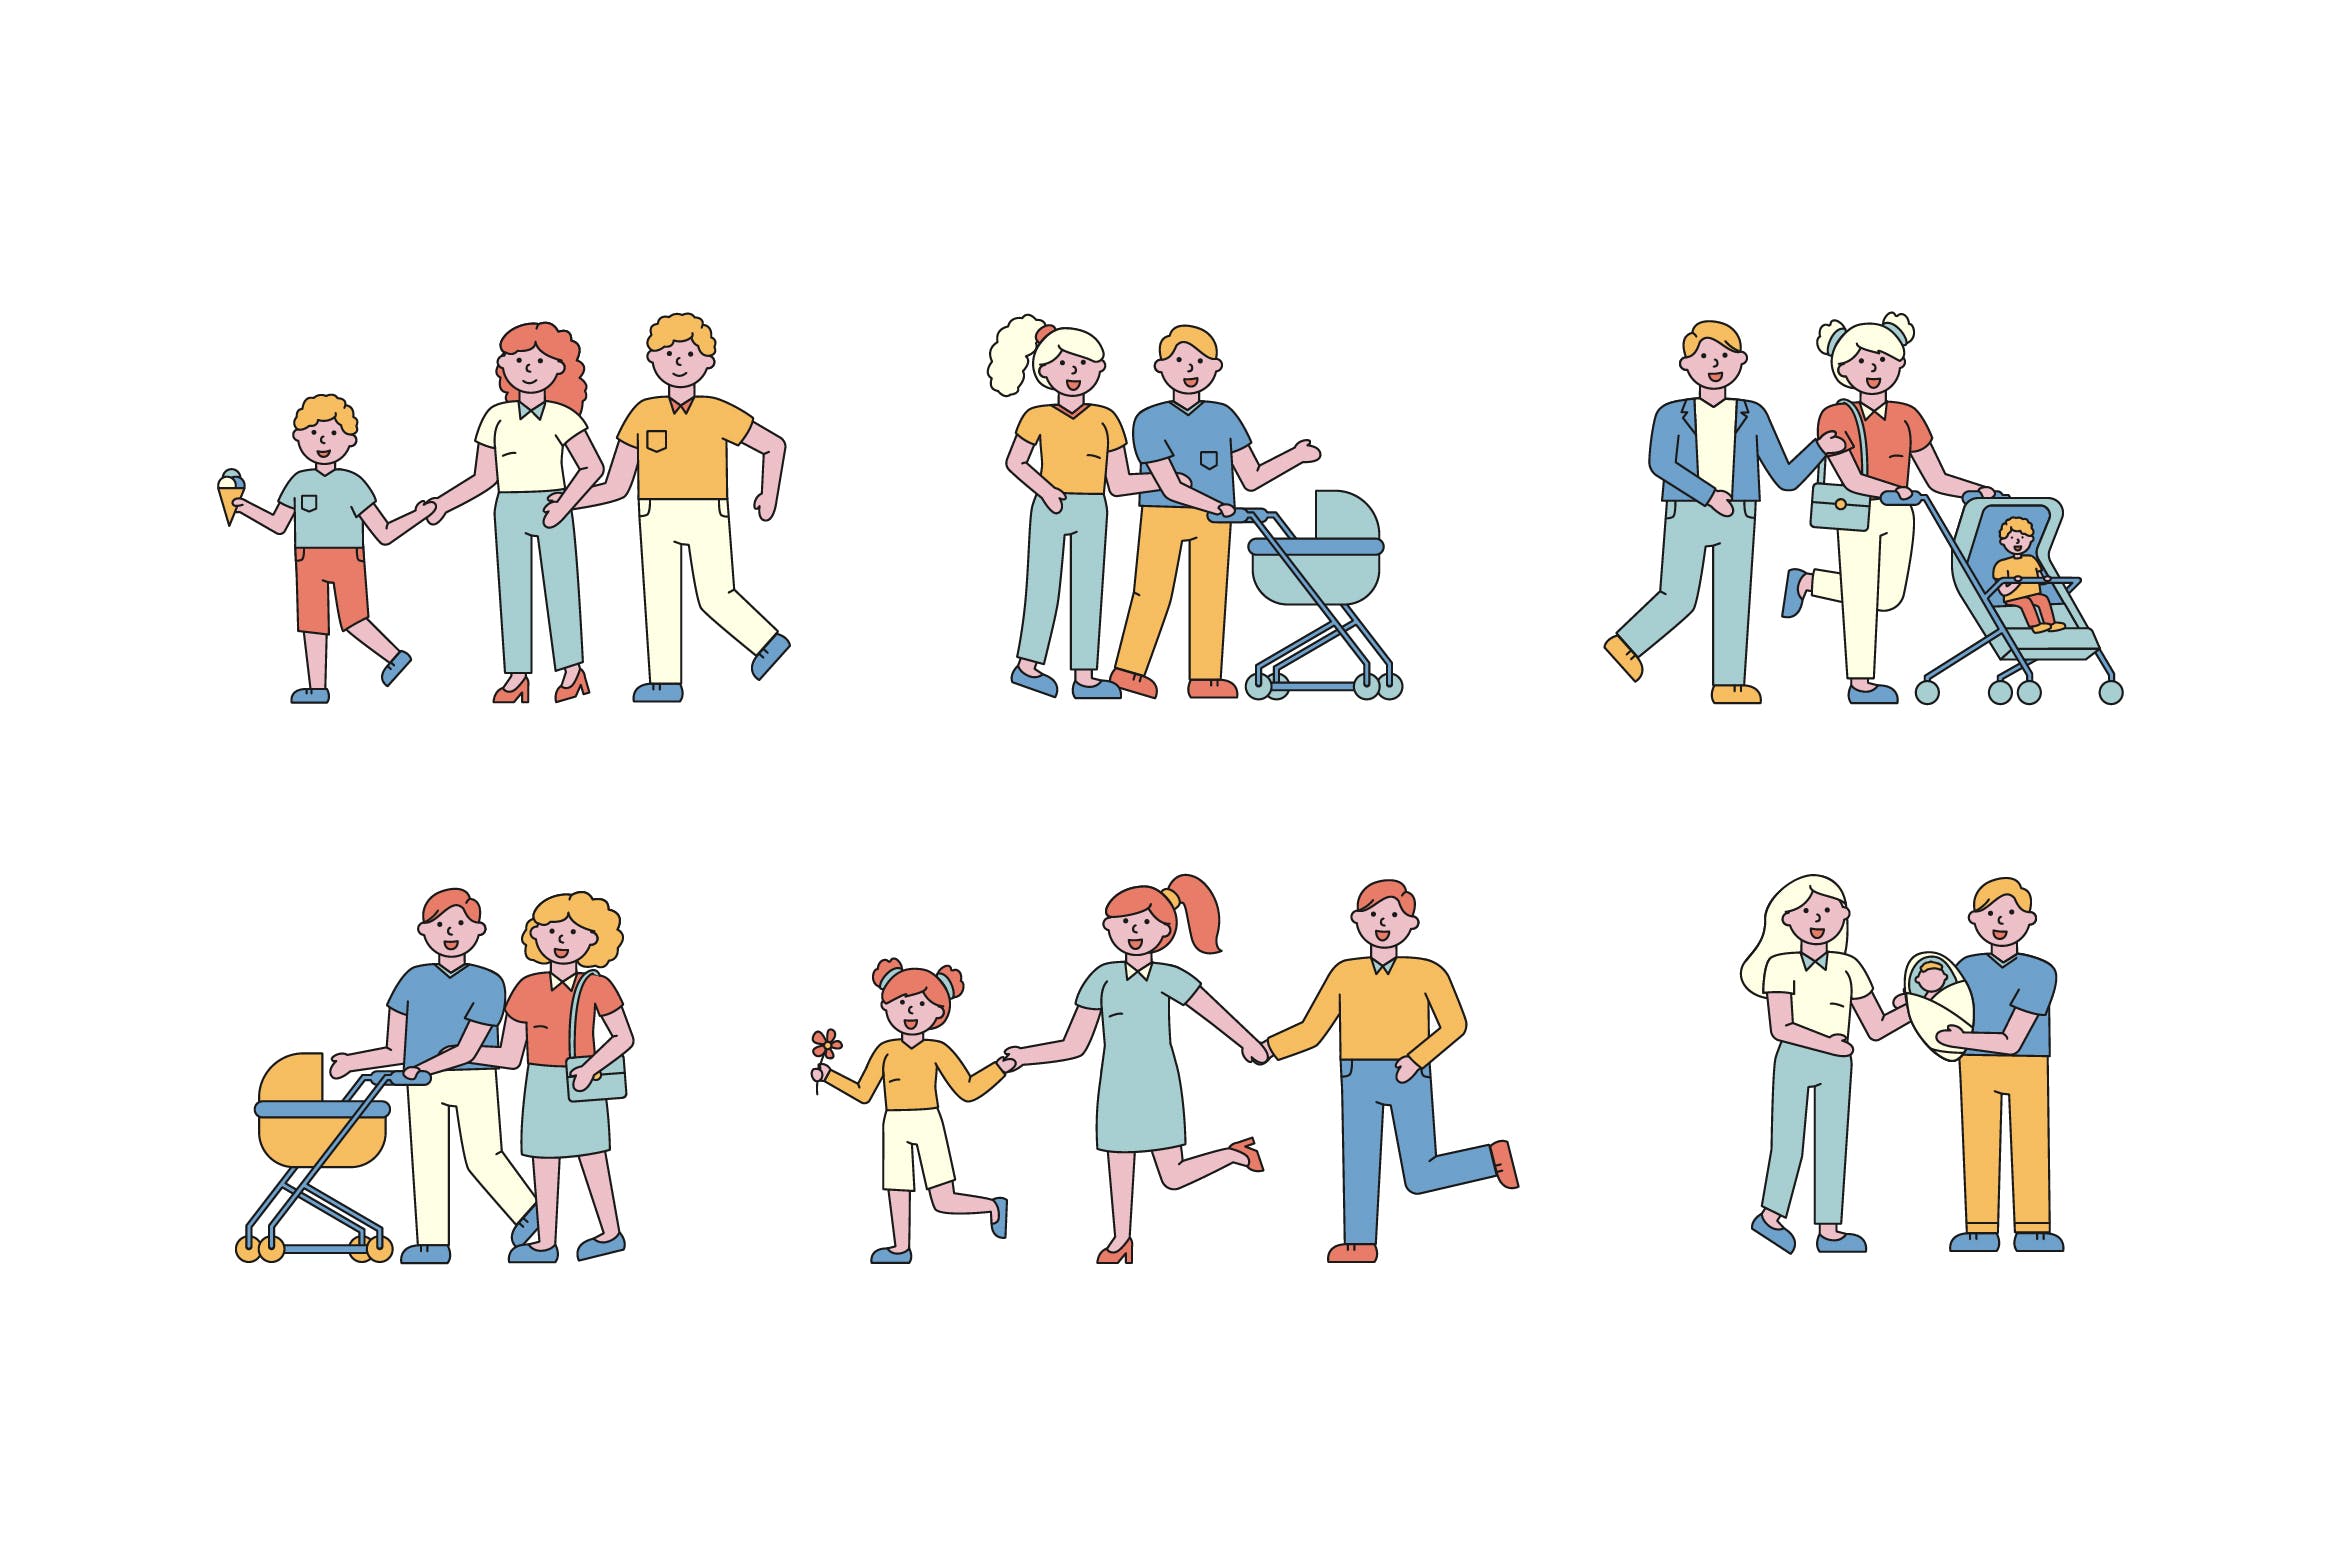 亲子活动主题人物形象线条艺术矢量插画蚂蚁素材精选素材 Family Lineart People Character Collection插图